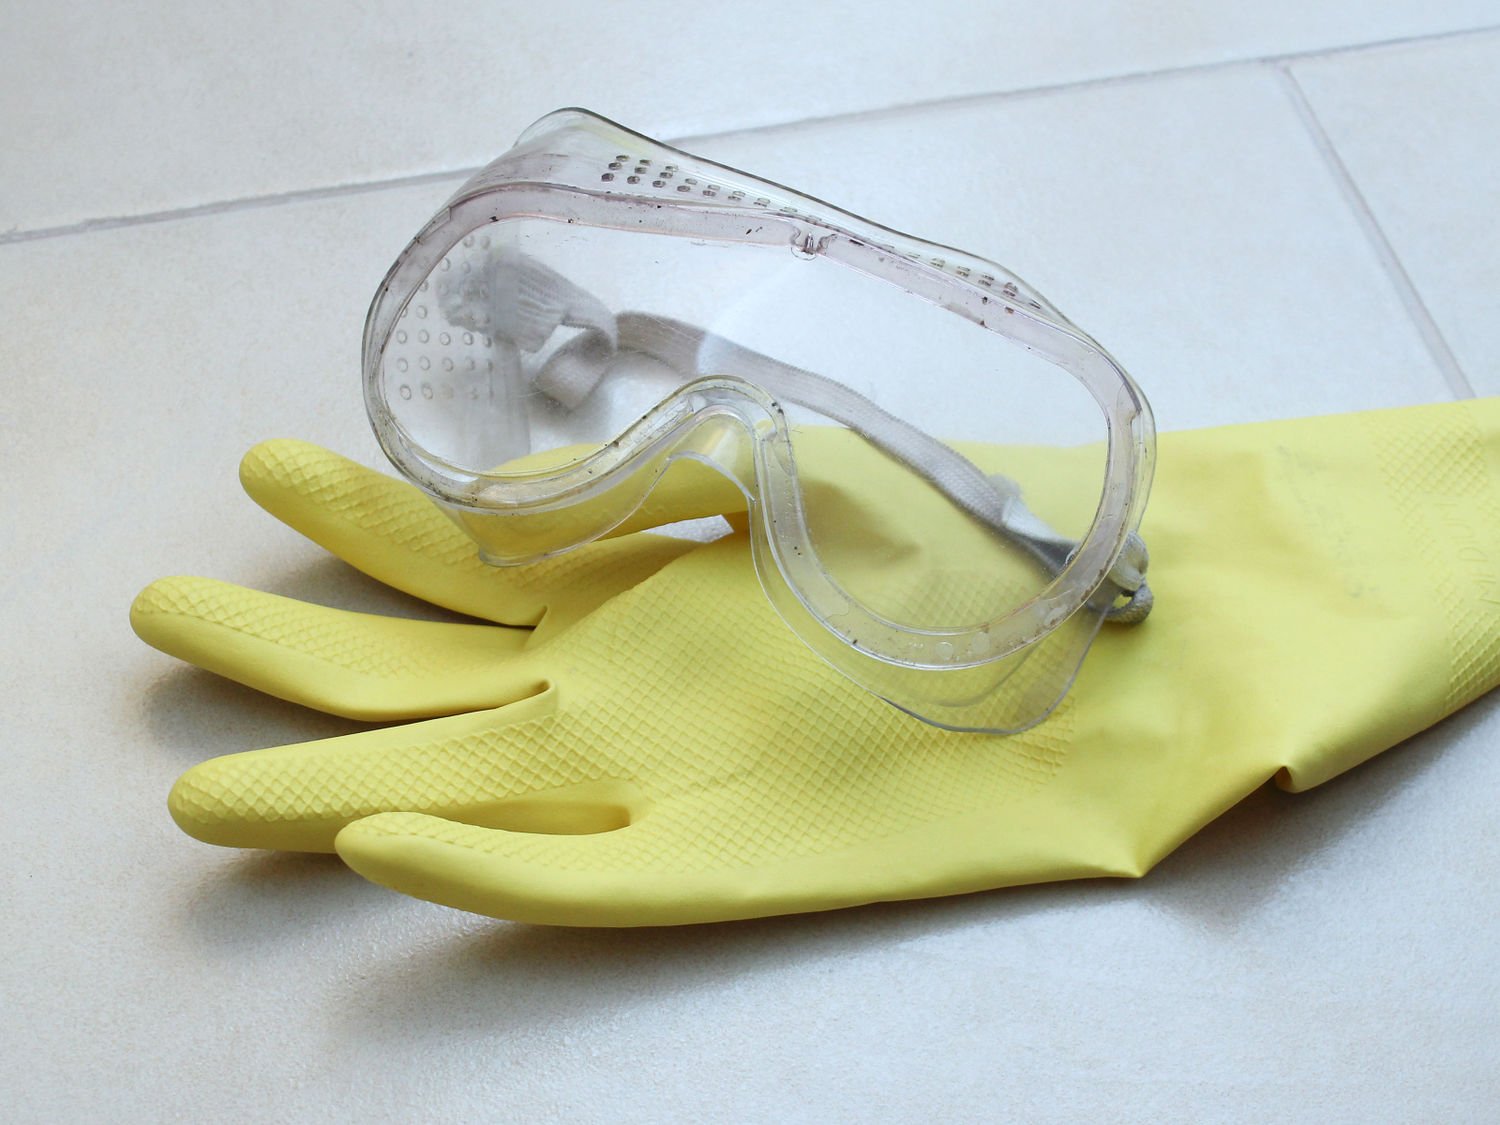 Очки резиновые защитные. Защитные очки и перчатки. Защитные очки и резиновые перчатки. Защитные очки, респиратор и резиновые перчатки. Перчатки маска защитные очки.